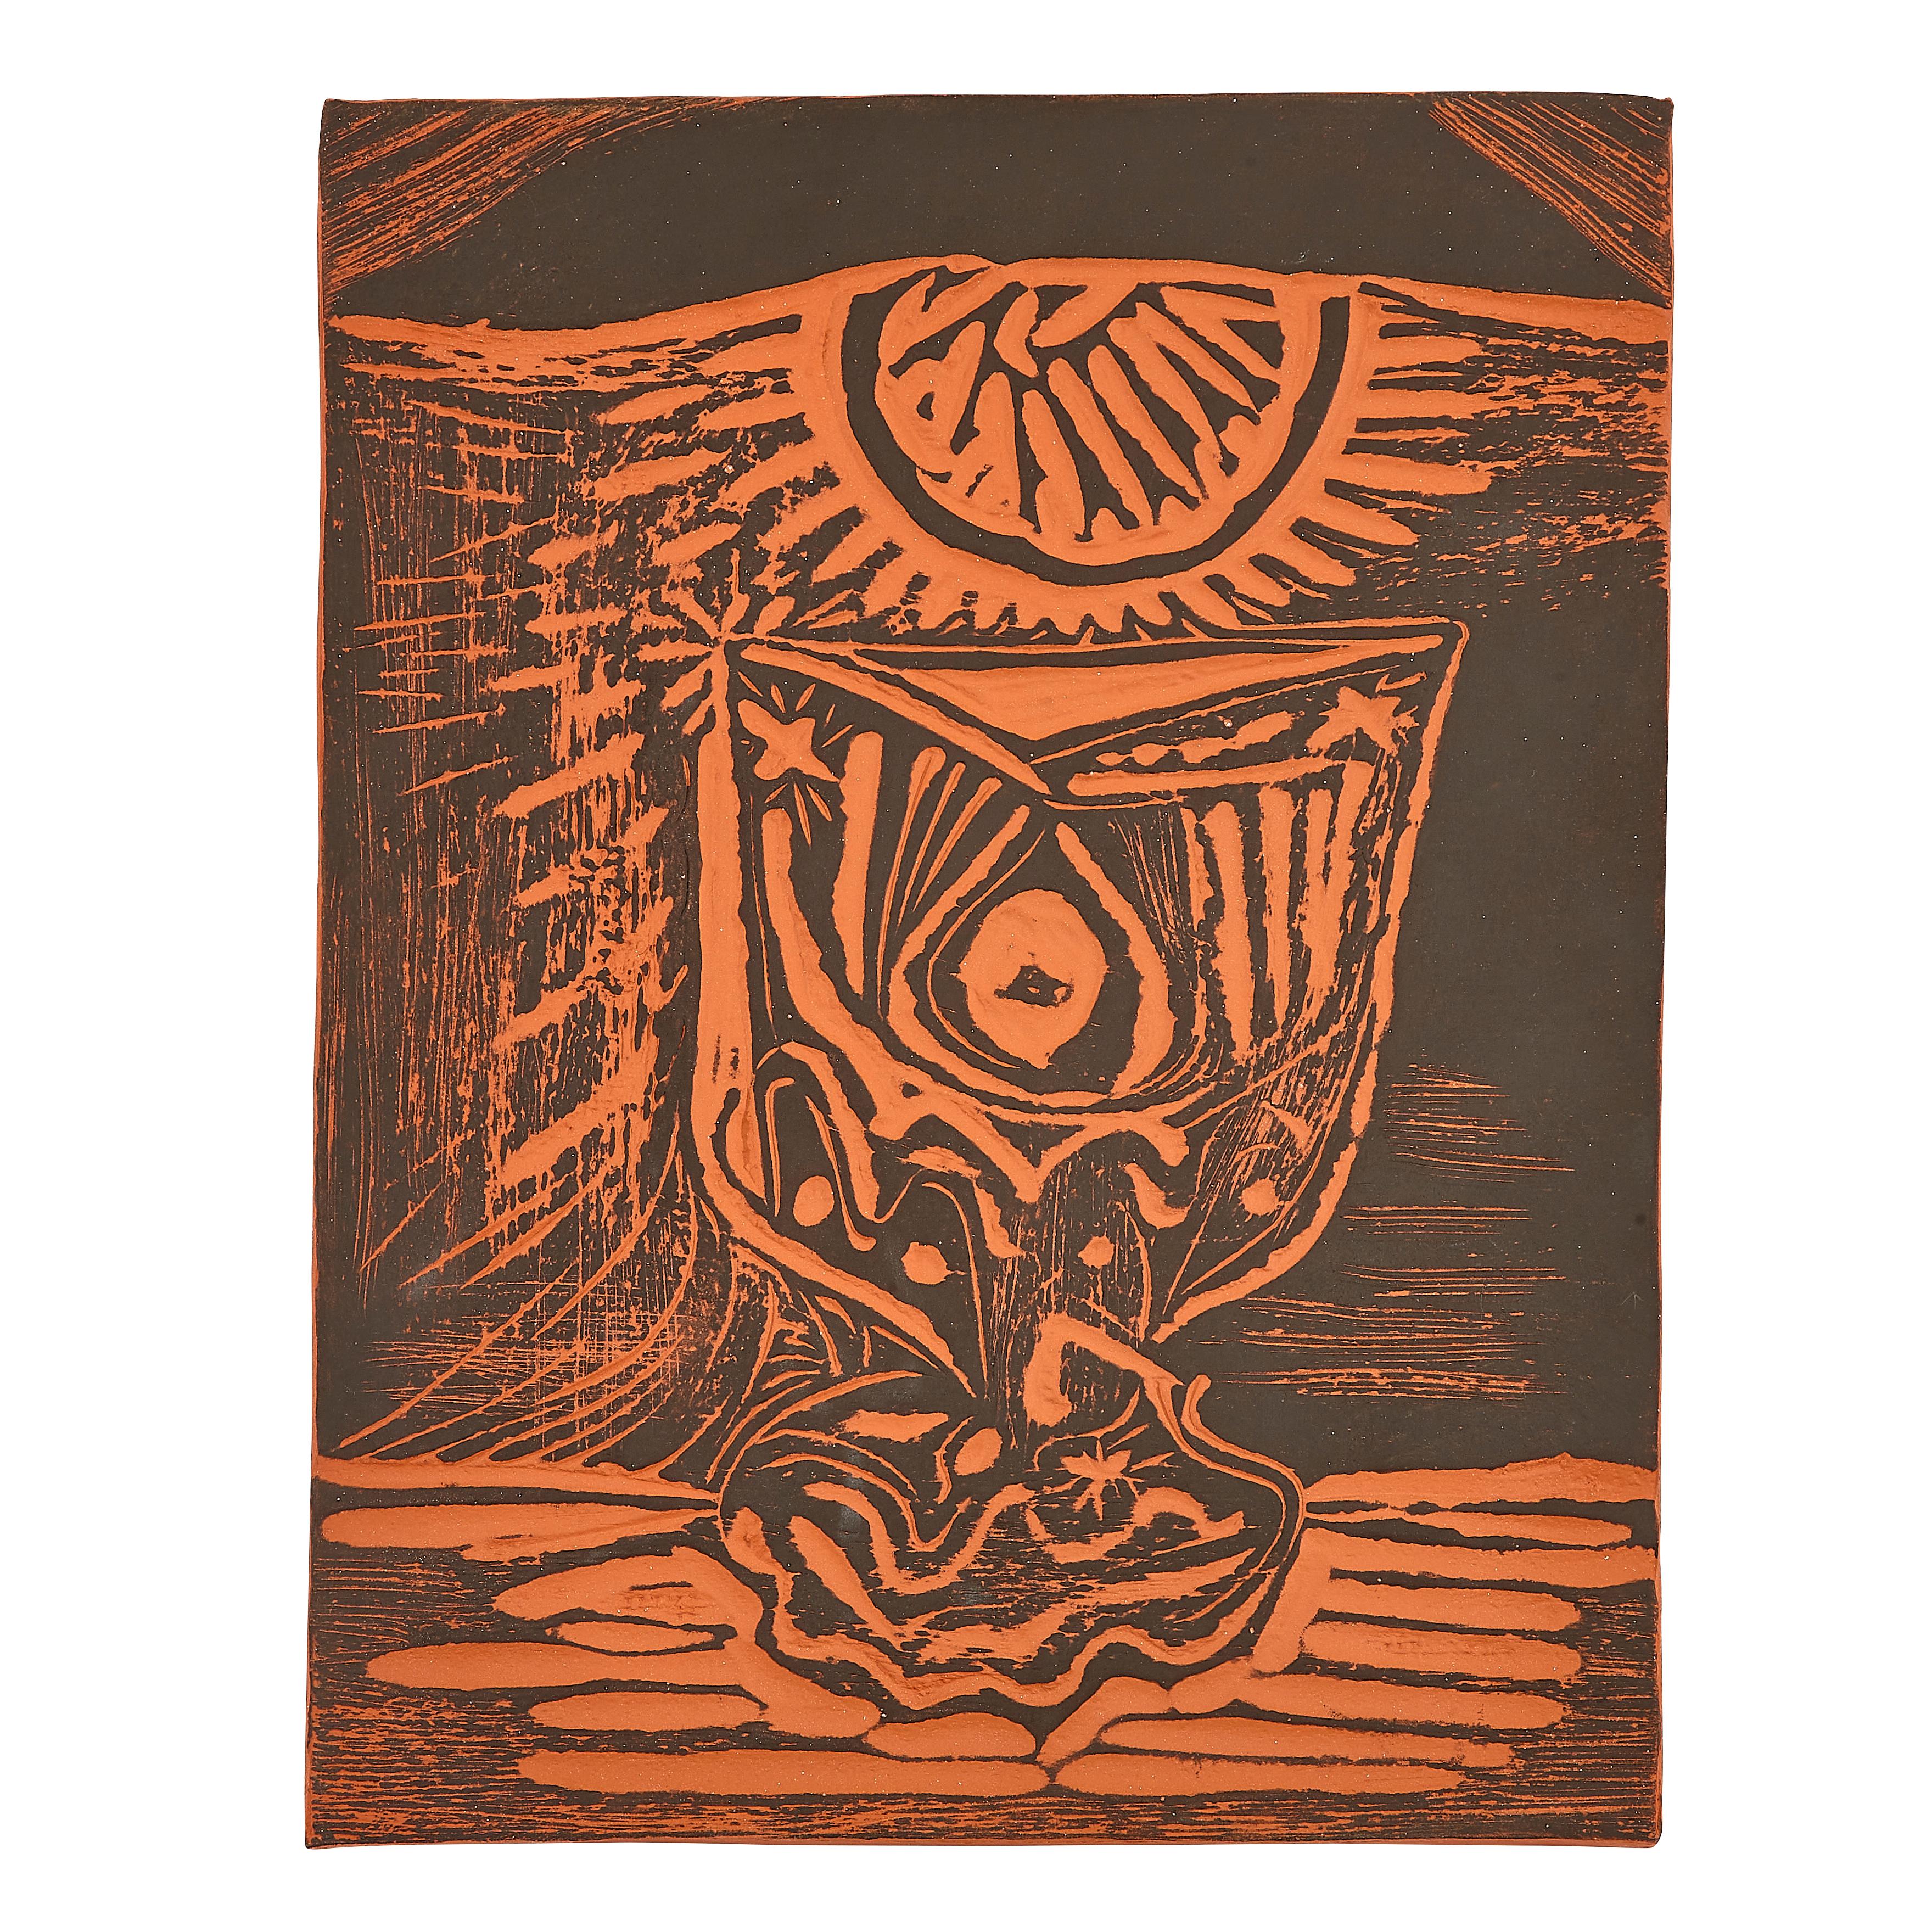 PABLO PICASSO (1881-1973) 
Le Verre Sous La Lampe (A. R. 519) 

Plaque Terre de faïence, 1964, numérotée 17/100, partiellement peinte, avec les cachets Empreinte Originale de Picasso et Madoura.